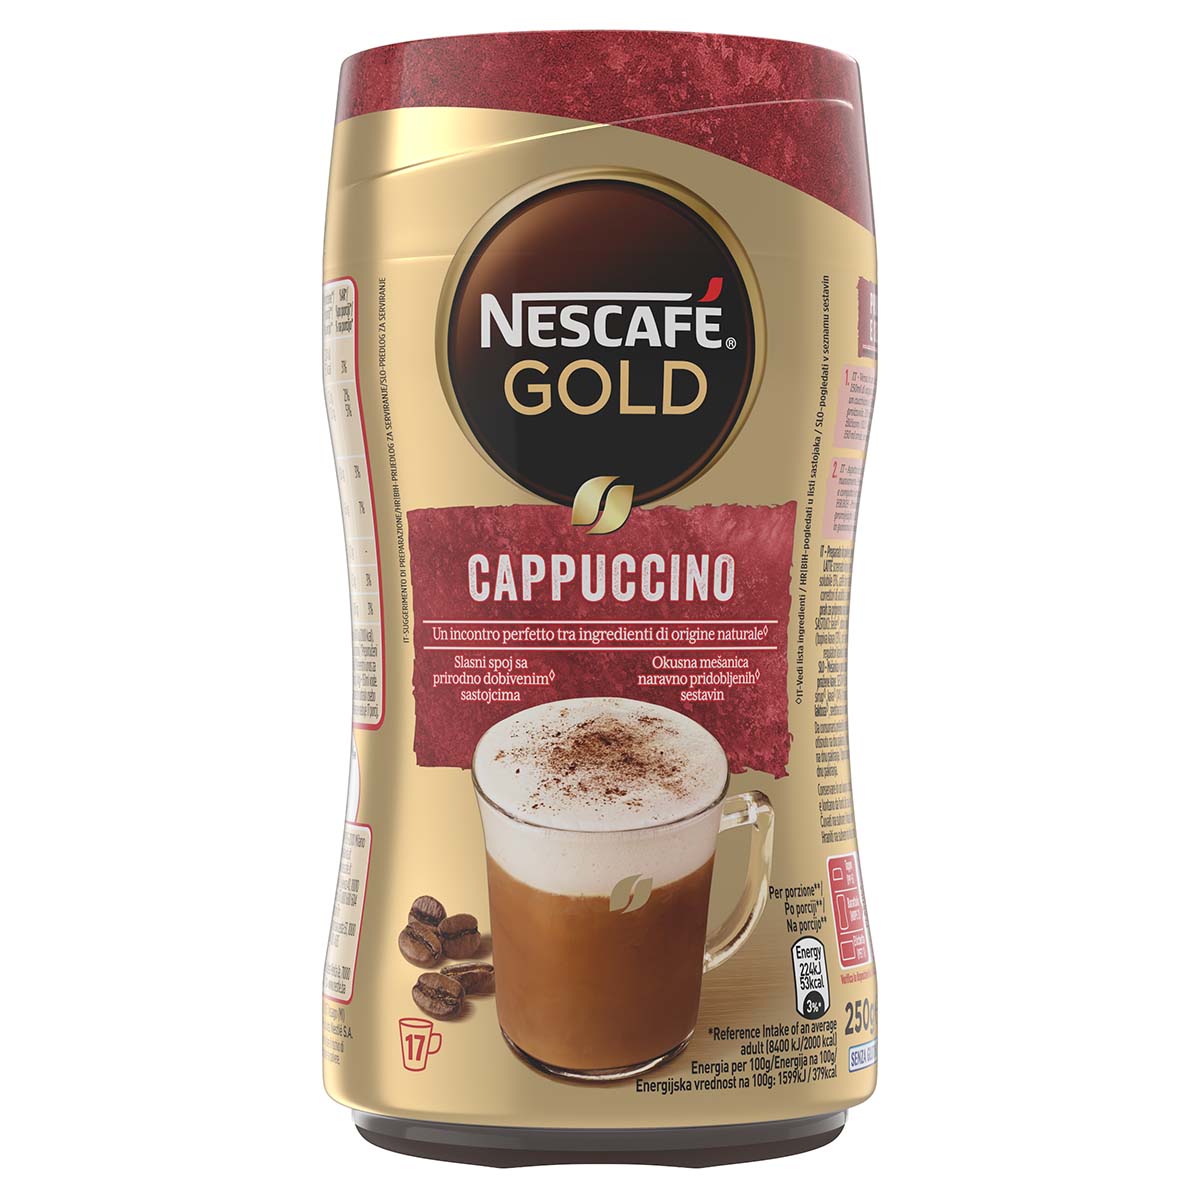 Nescafé GOLD CAPPUCCINO Preparato Solubile Per Cappuccino Barattolo 250g